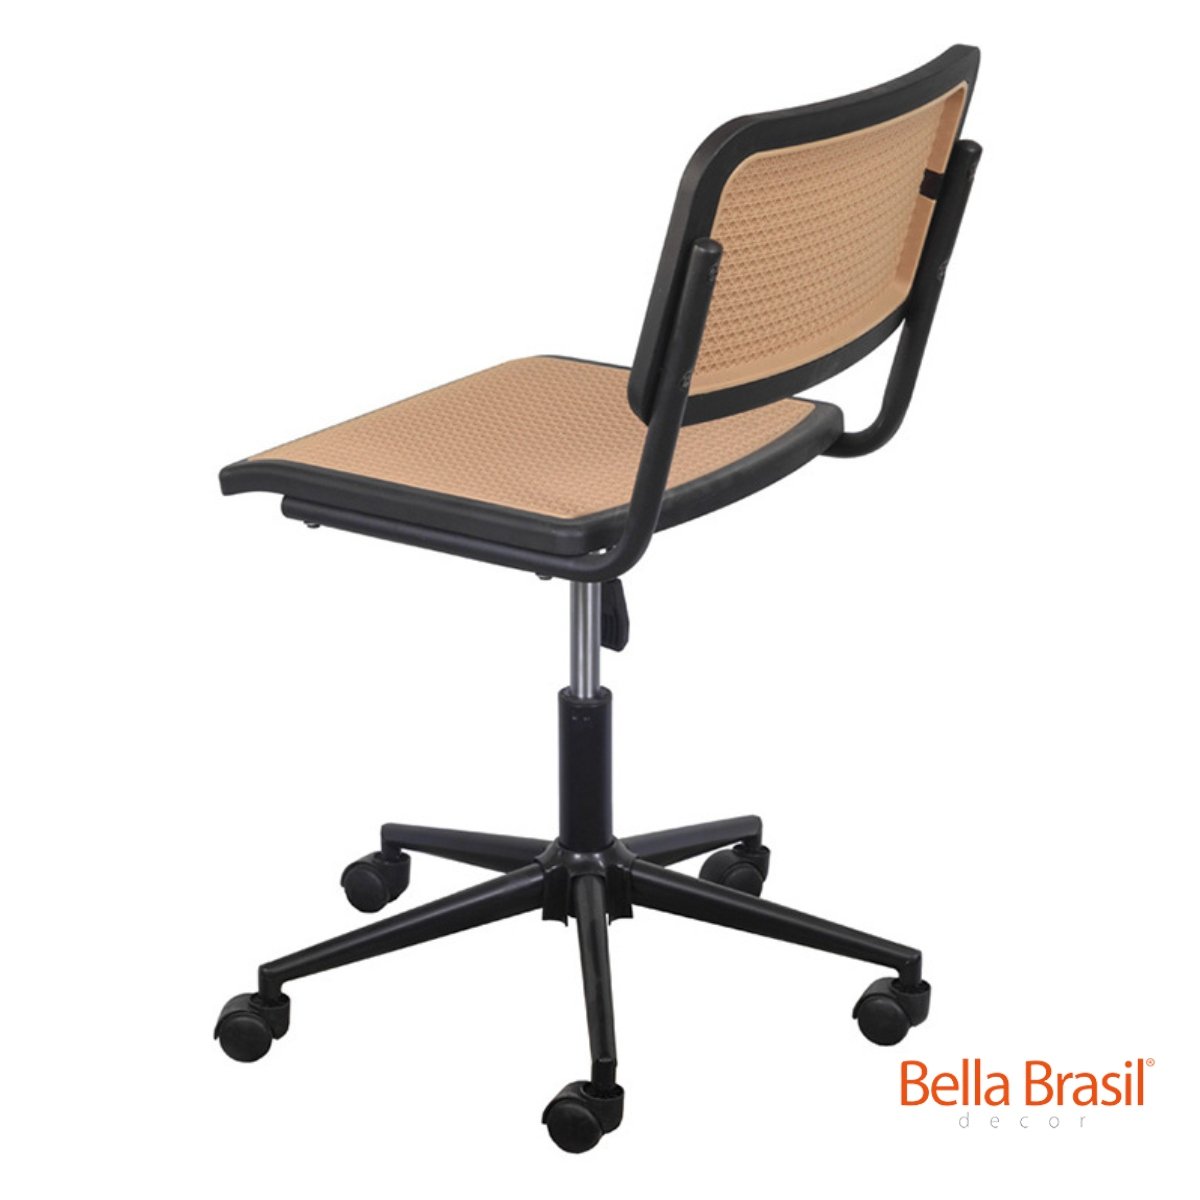 Cadeira Vera Base Giratória sem Braço - Bella Brasil Decor 126 - Bella Brasil Decor Preto/bege - 3